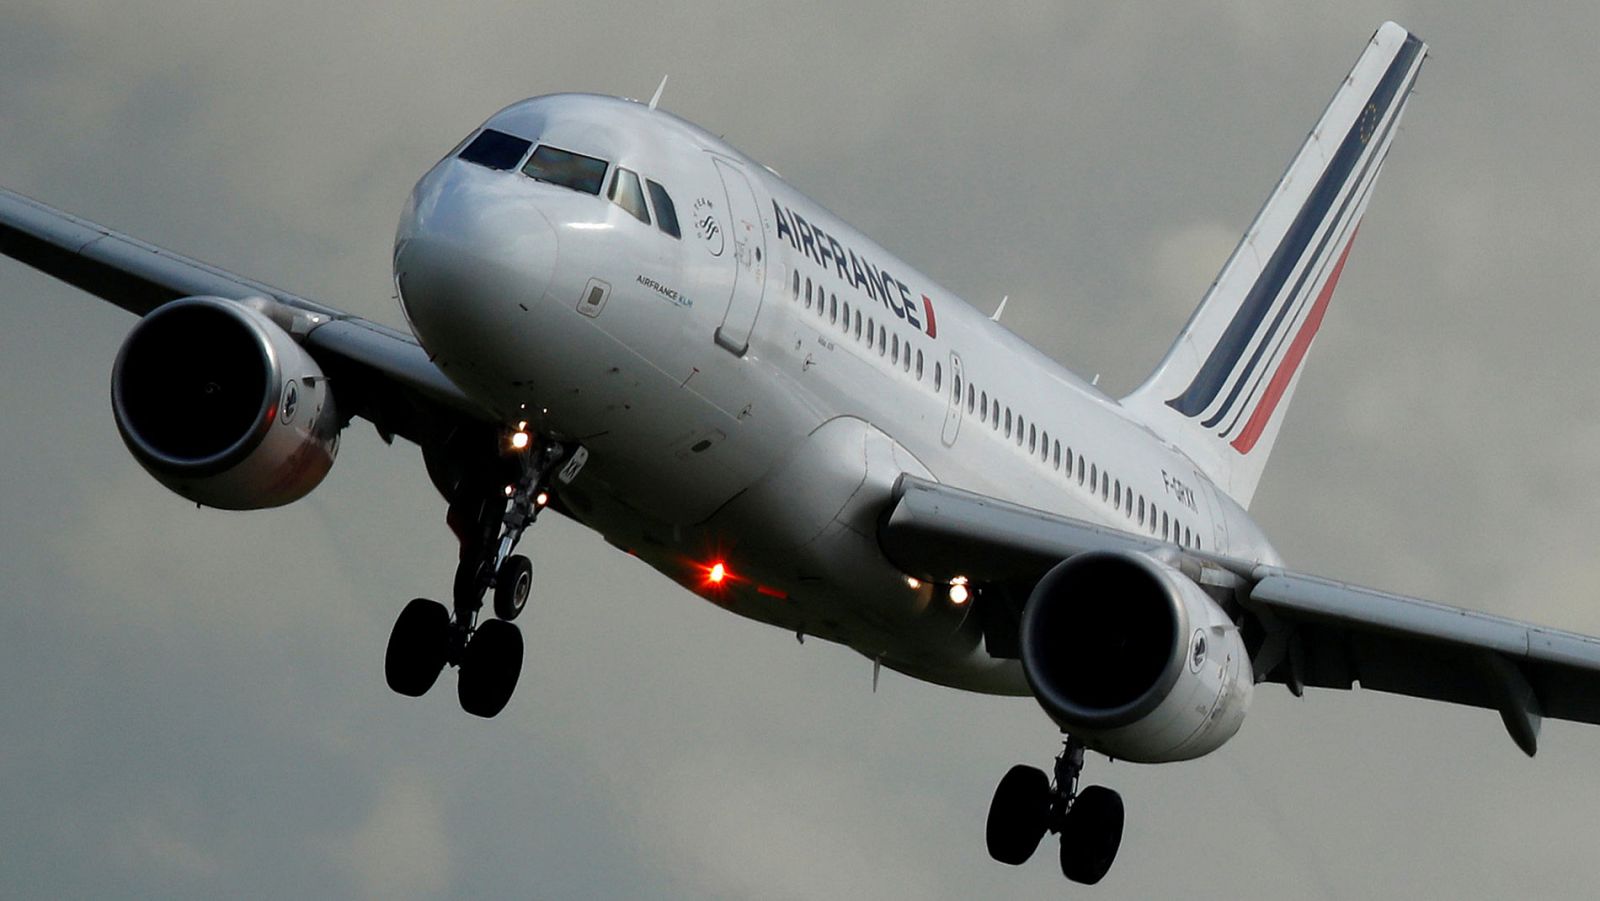 Los trabajadores de Air France han rechazado la propuesta de mejora salaria ofrecida por el presidente de la compañía